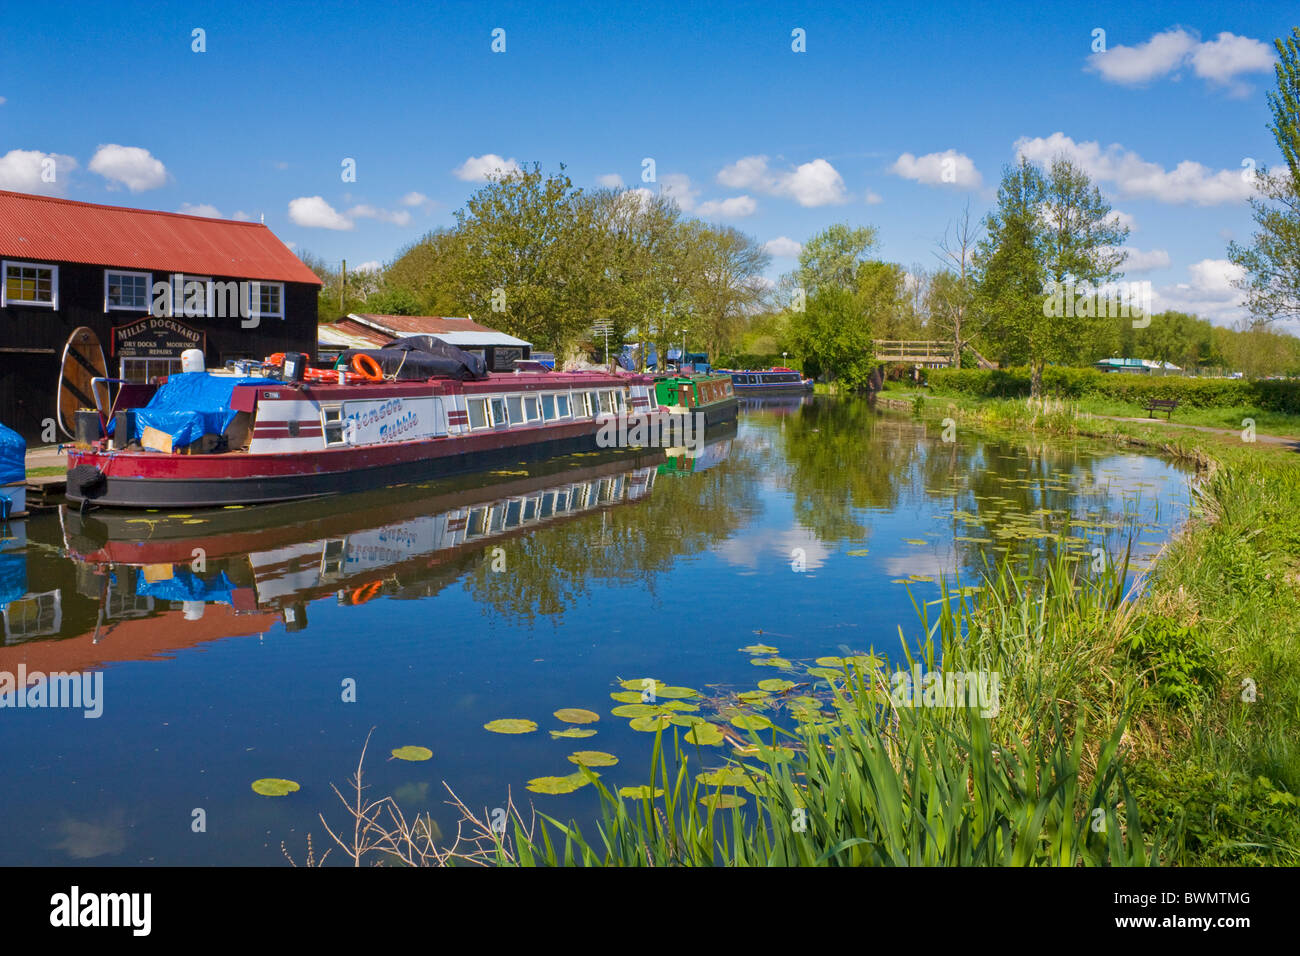 Restringere la barca o chiatta sul Erewash canal a Sawley nei pressi di Long Eaton, Derbyshire, Inghilterra, GB, Regno Unito e Unione europea, Europa Foto Stock